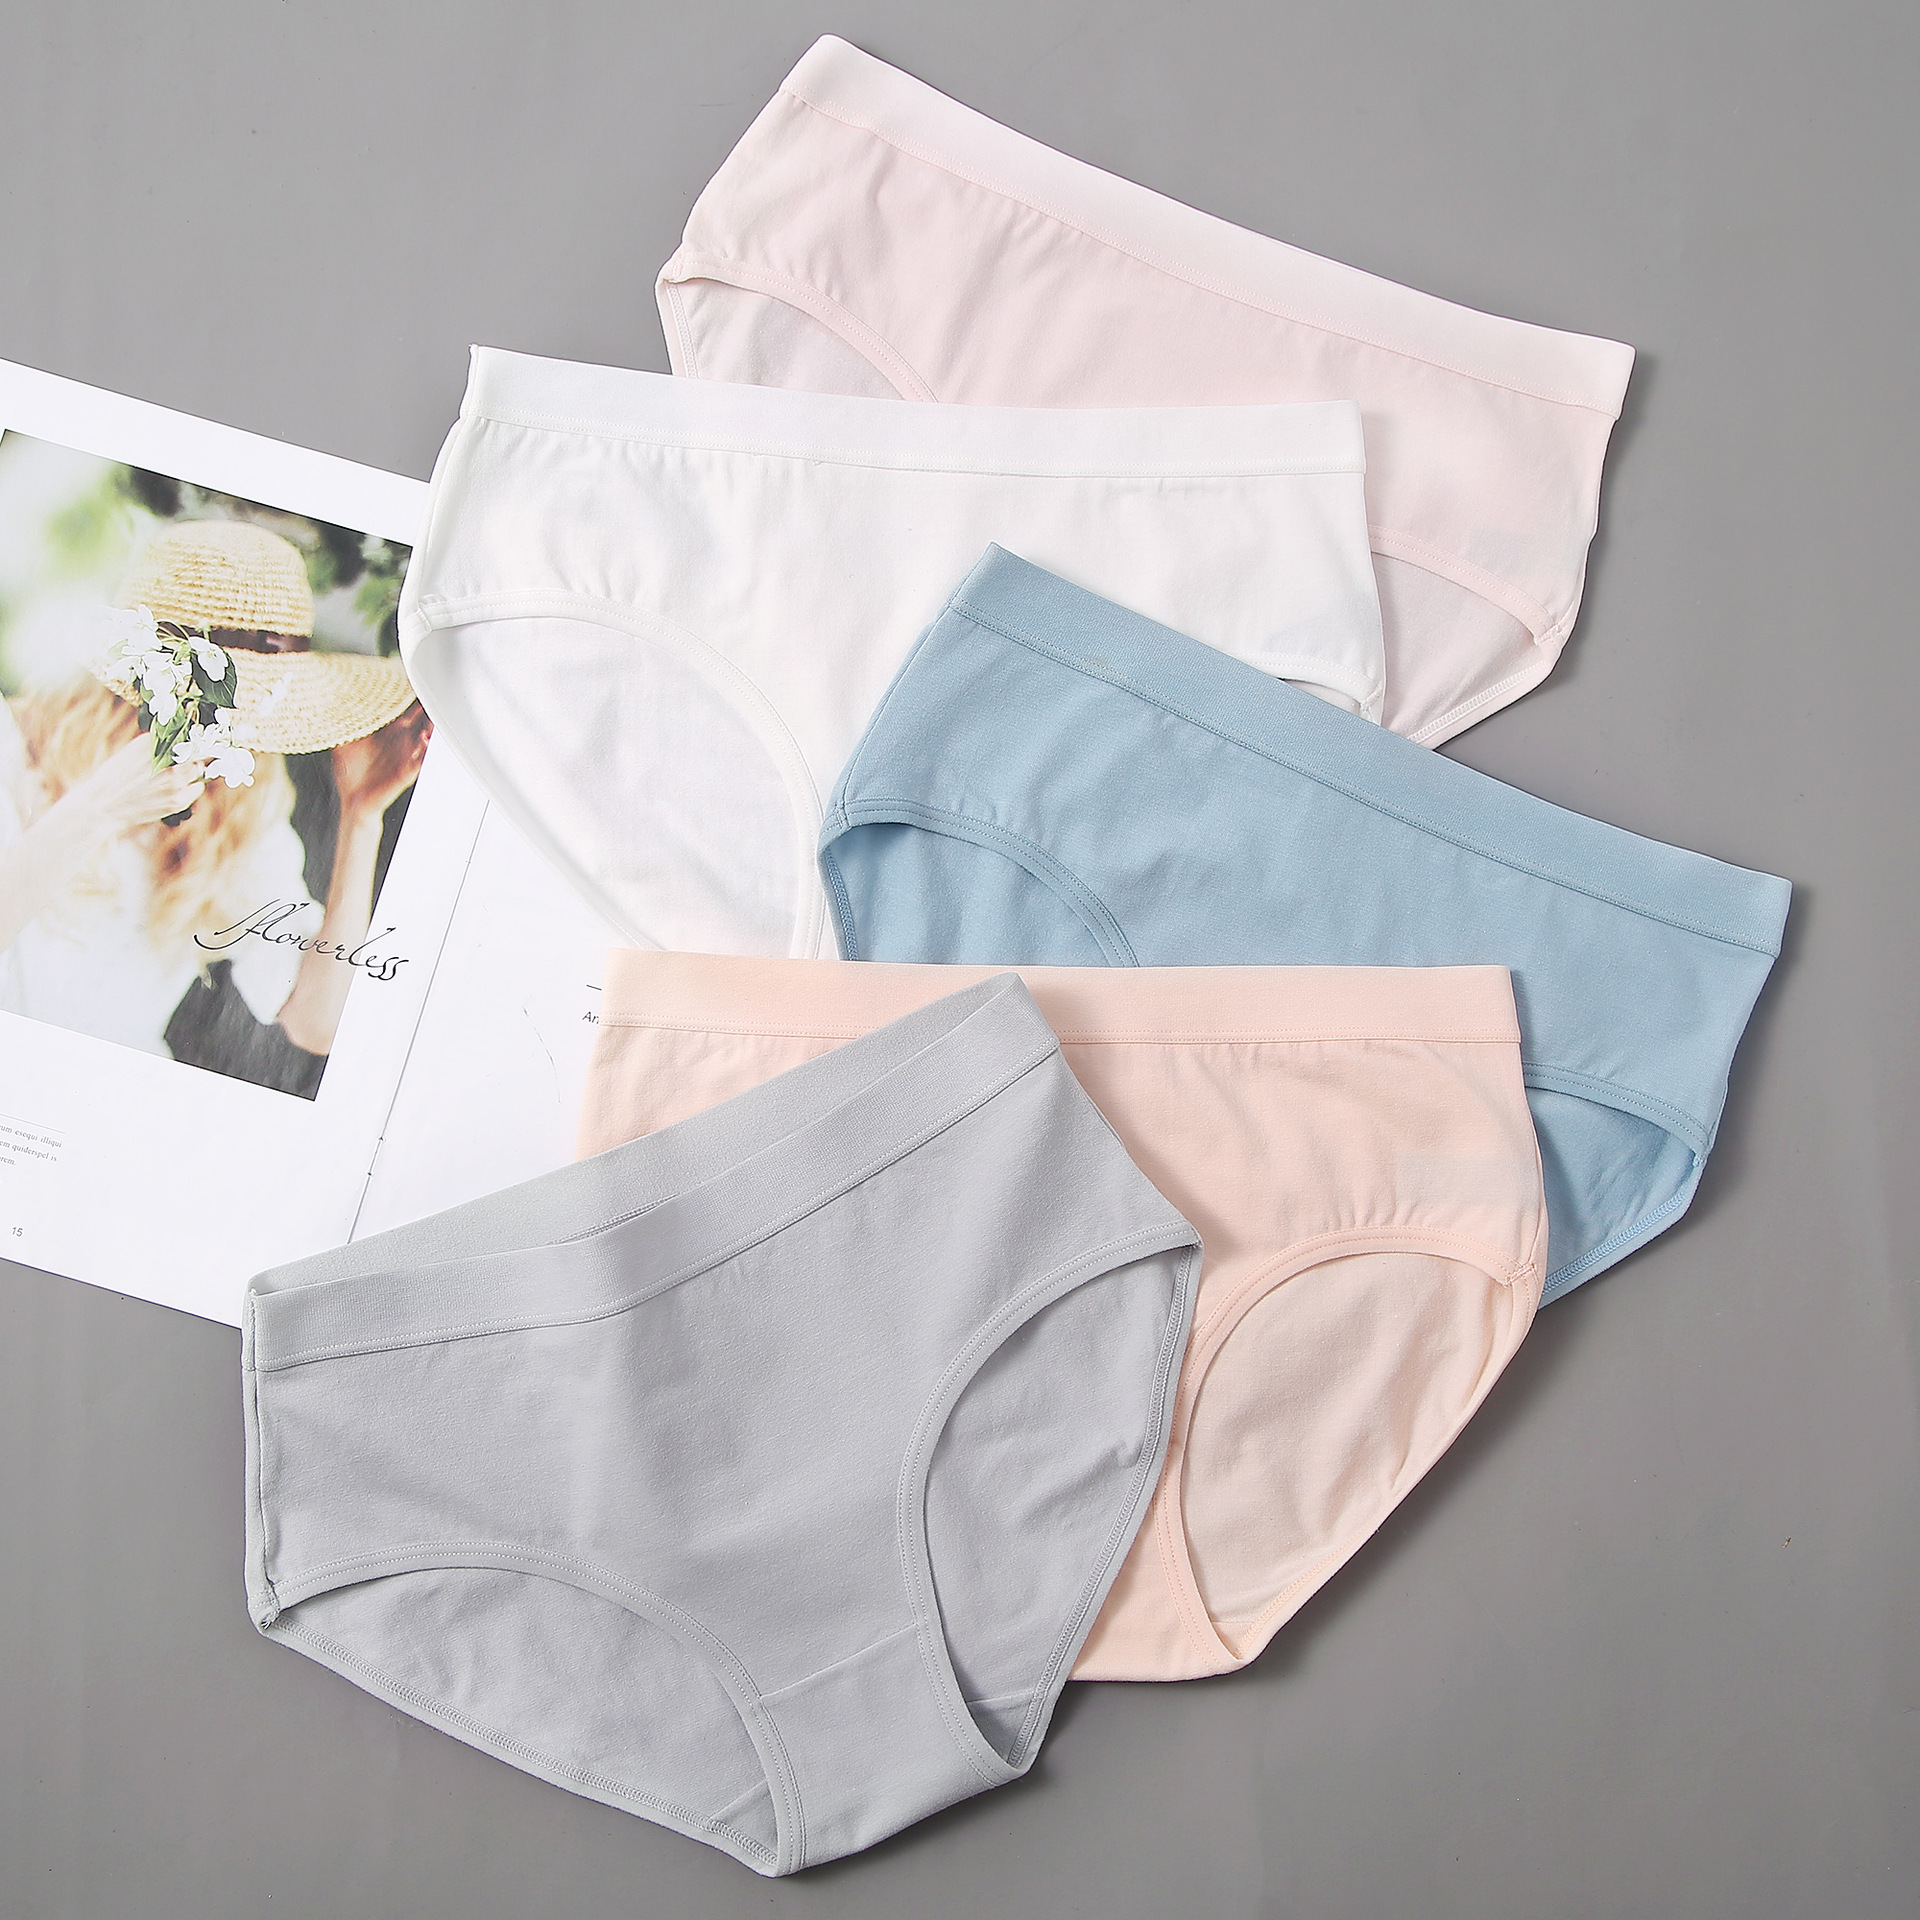 女式内裤的种类图片